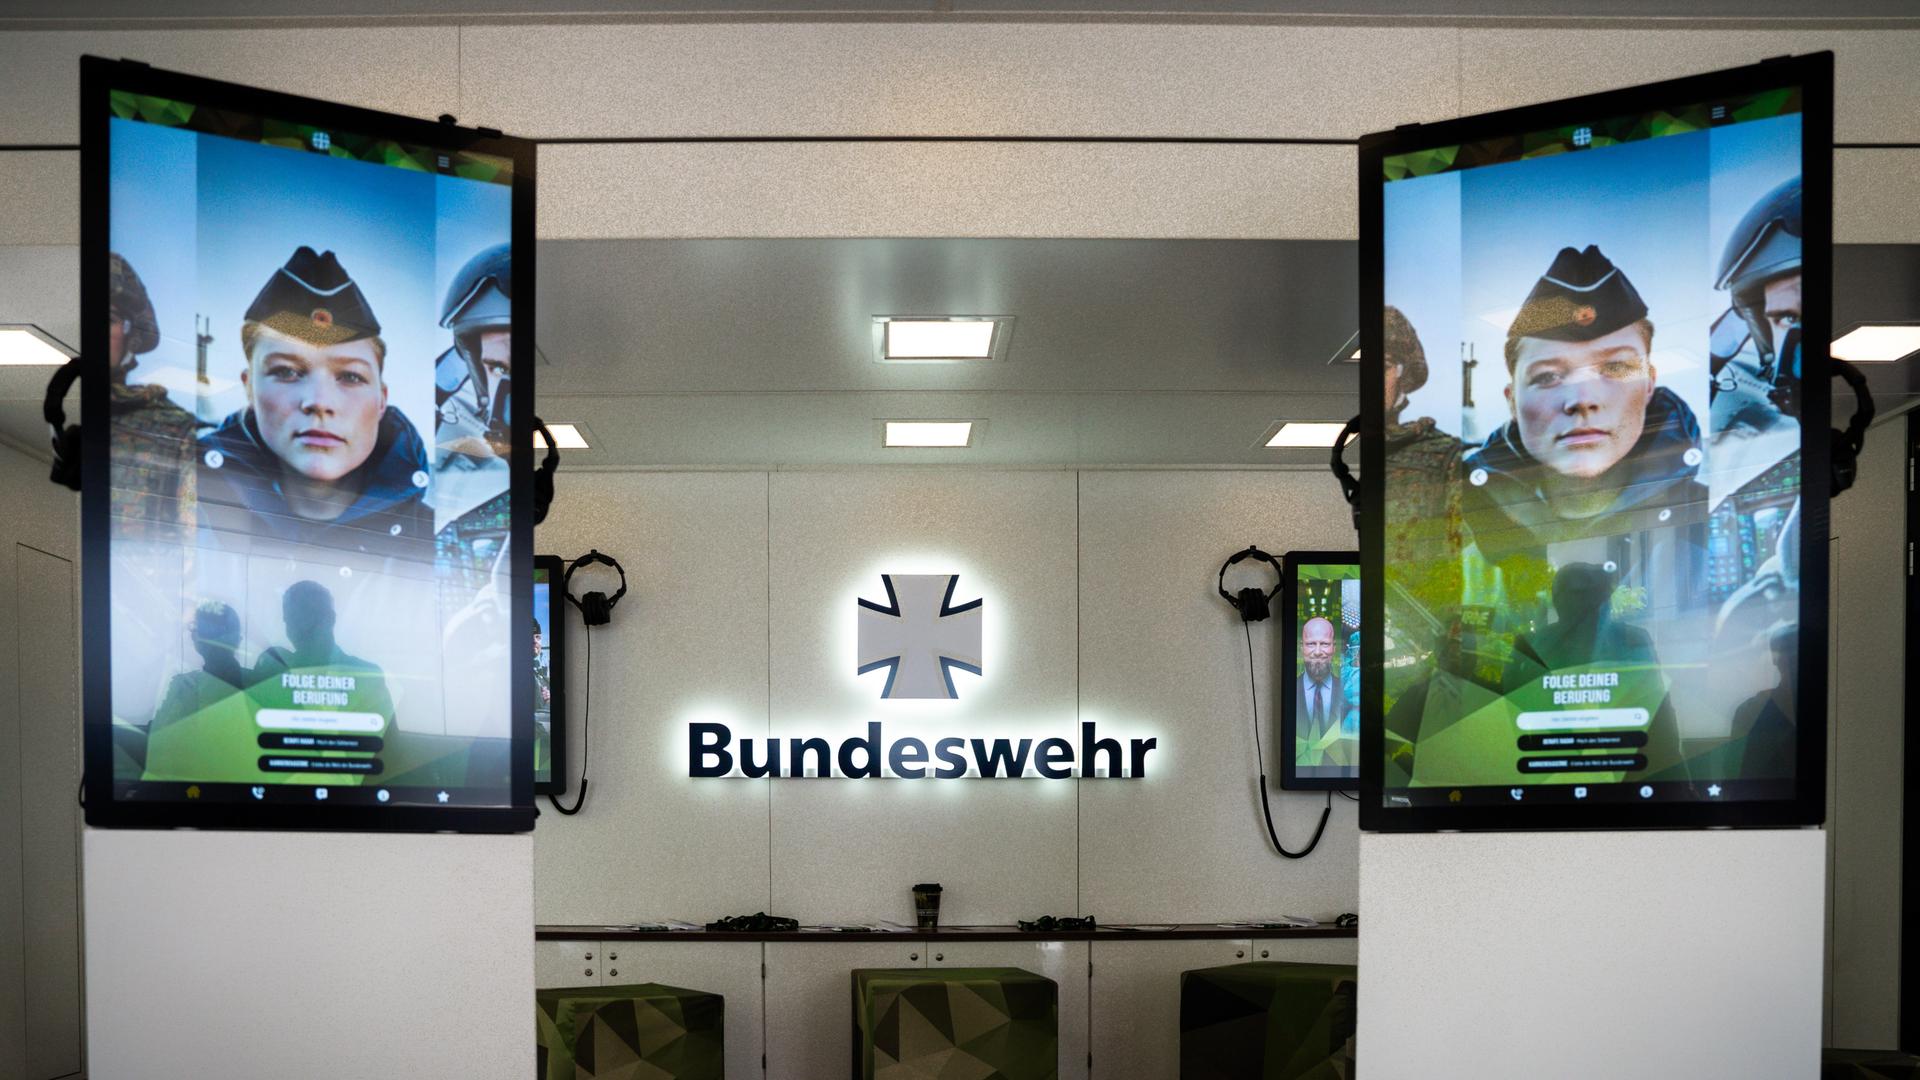  Logo der Bundeswehr im Karrieretruck der Bundeswehr inmitten von zwei Bildschirmen, die das Gesicht eines Soldaten in Uniform zeigen. 